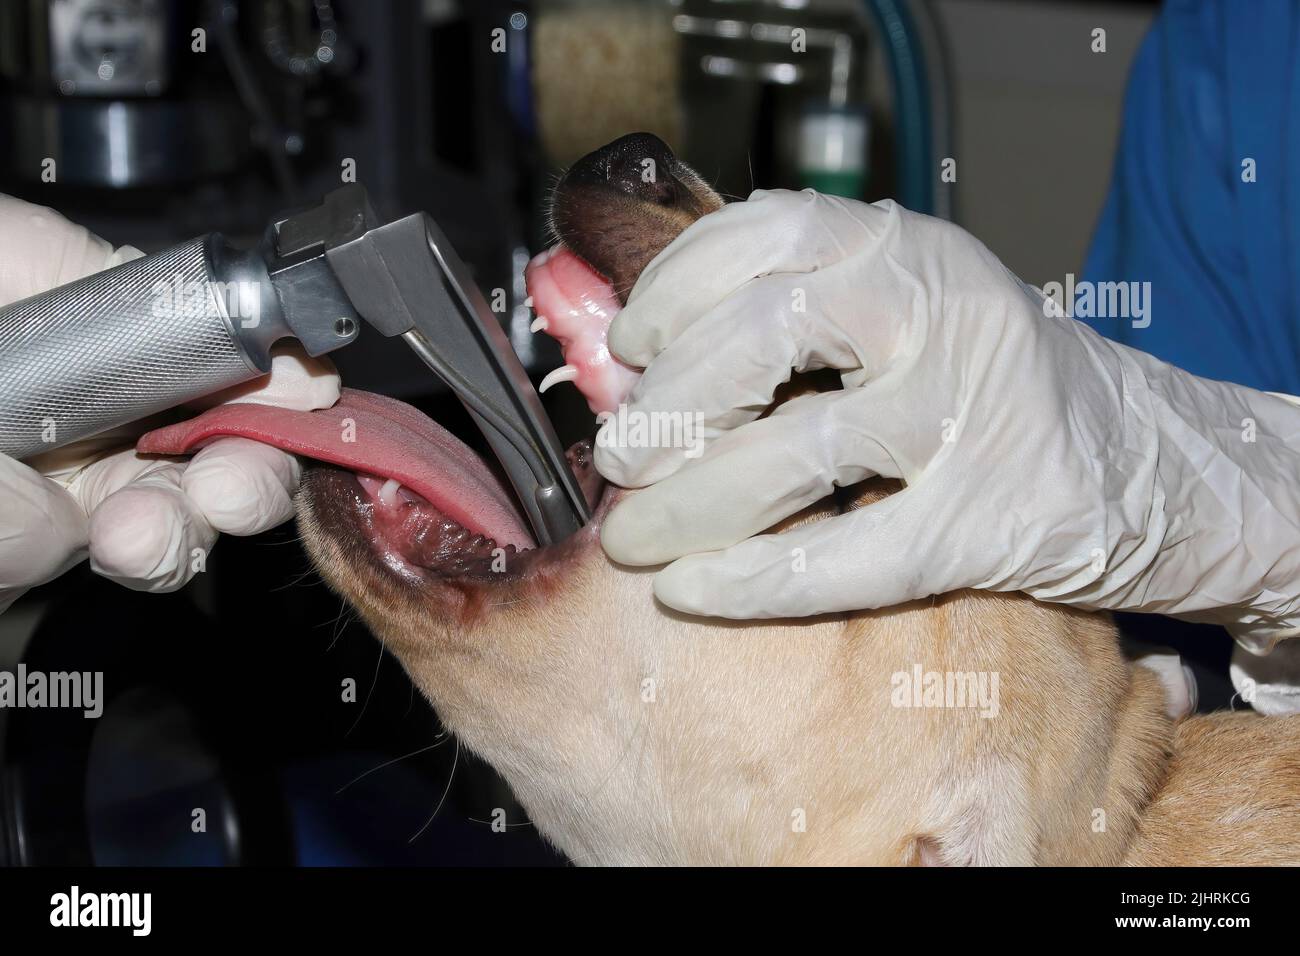 Primo piano di un chirurgo veterinario che posiziona un tubo endotracheale nelle vie aeree di un puppie Labrador prima dell'intervento chirurgico Foto Stock